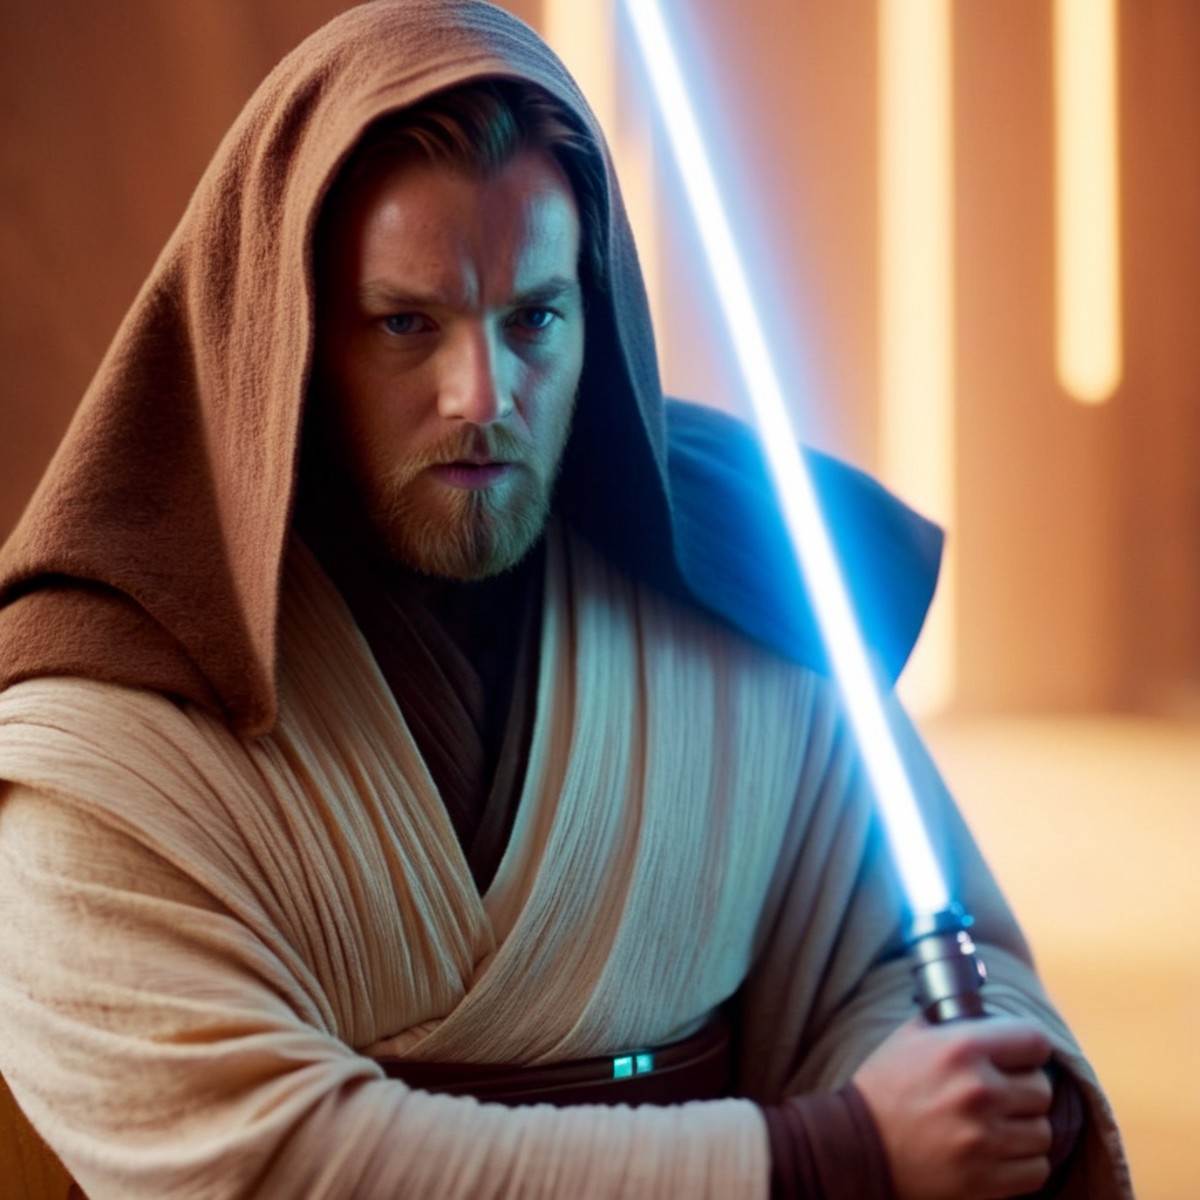 cinematic film still of  <lora:Obi-Wan Kenobi:1.2>
Obi-Wan Kenobi a man dressed in a jedi - wars outfit holding a light sa...